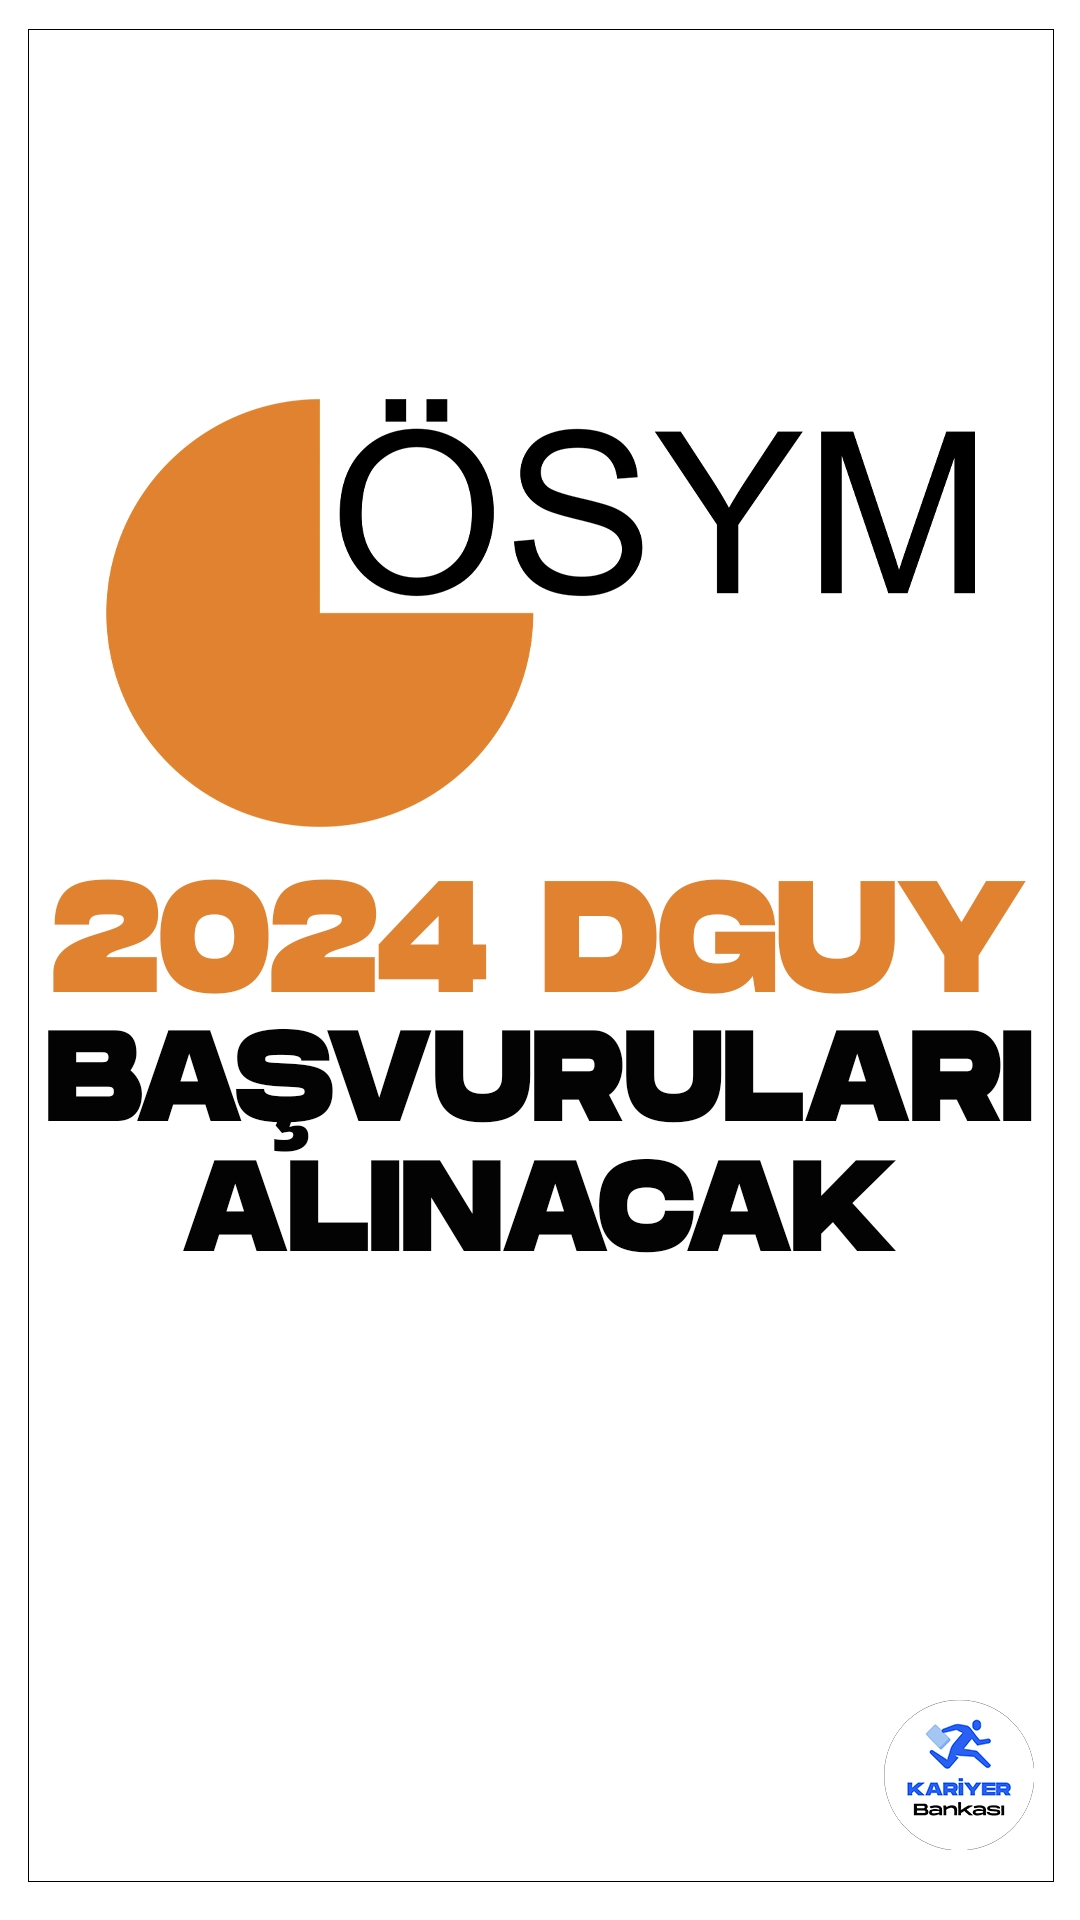 2024 DGUY Sınavı Başvuruları Alınacak. ÖSYM sayfasından yayımlana son dakika duyurusunda, 2024 Gelir İdaresi Başkanlığı Devlet Gelir Uzman Yardımcılığı Giriş Sınavı (2024-DGUY), 4 Mayıs 2024 tarihinde Ankara’da elektronik olarak uygulanacak sınava ön başvuruların 7-13 Mart 2024 tarihleri arasında alınacağı aktarıldı.